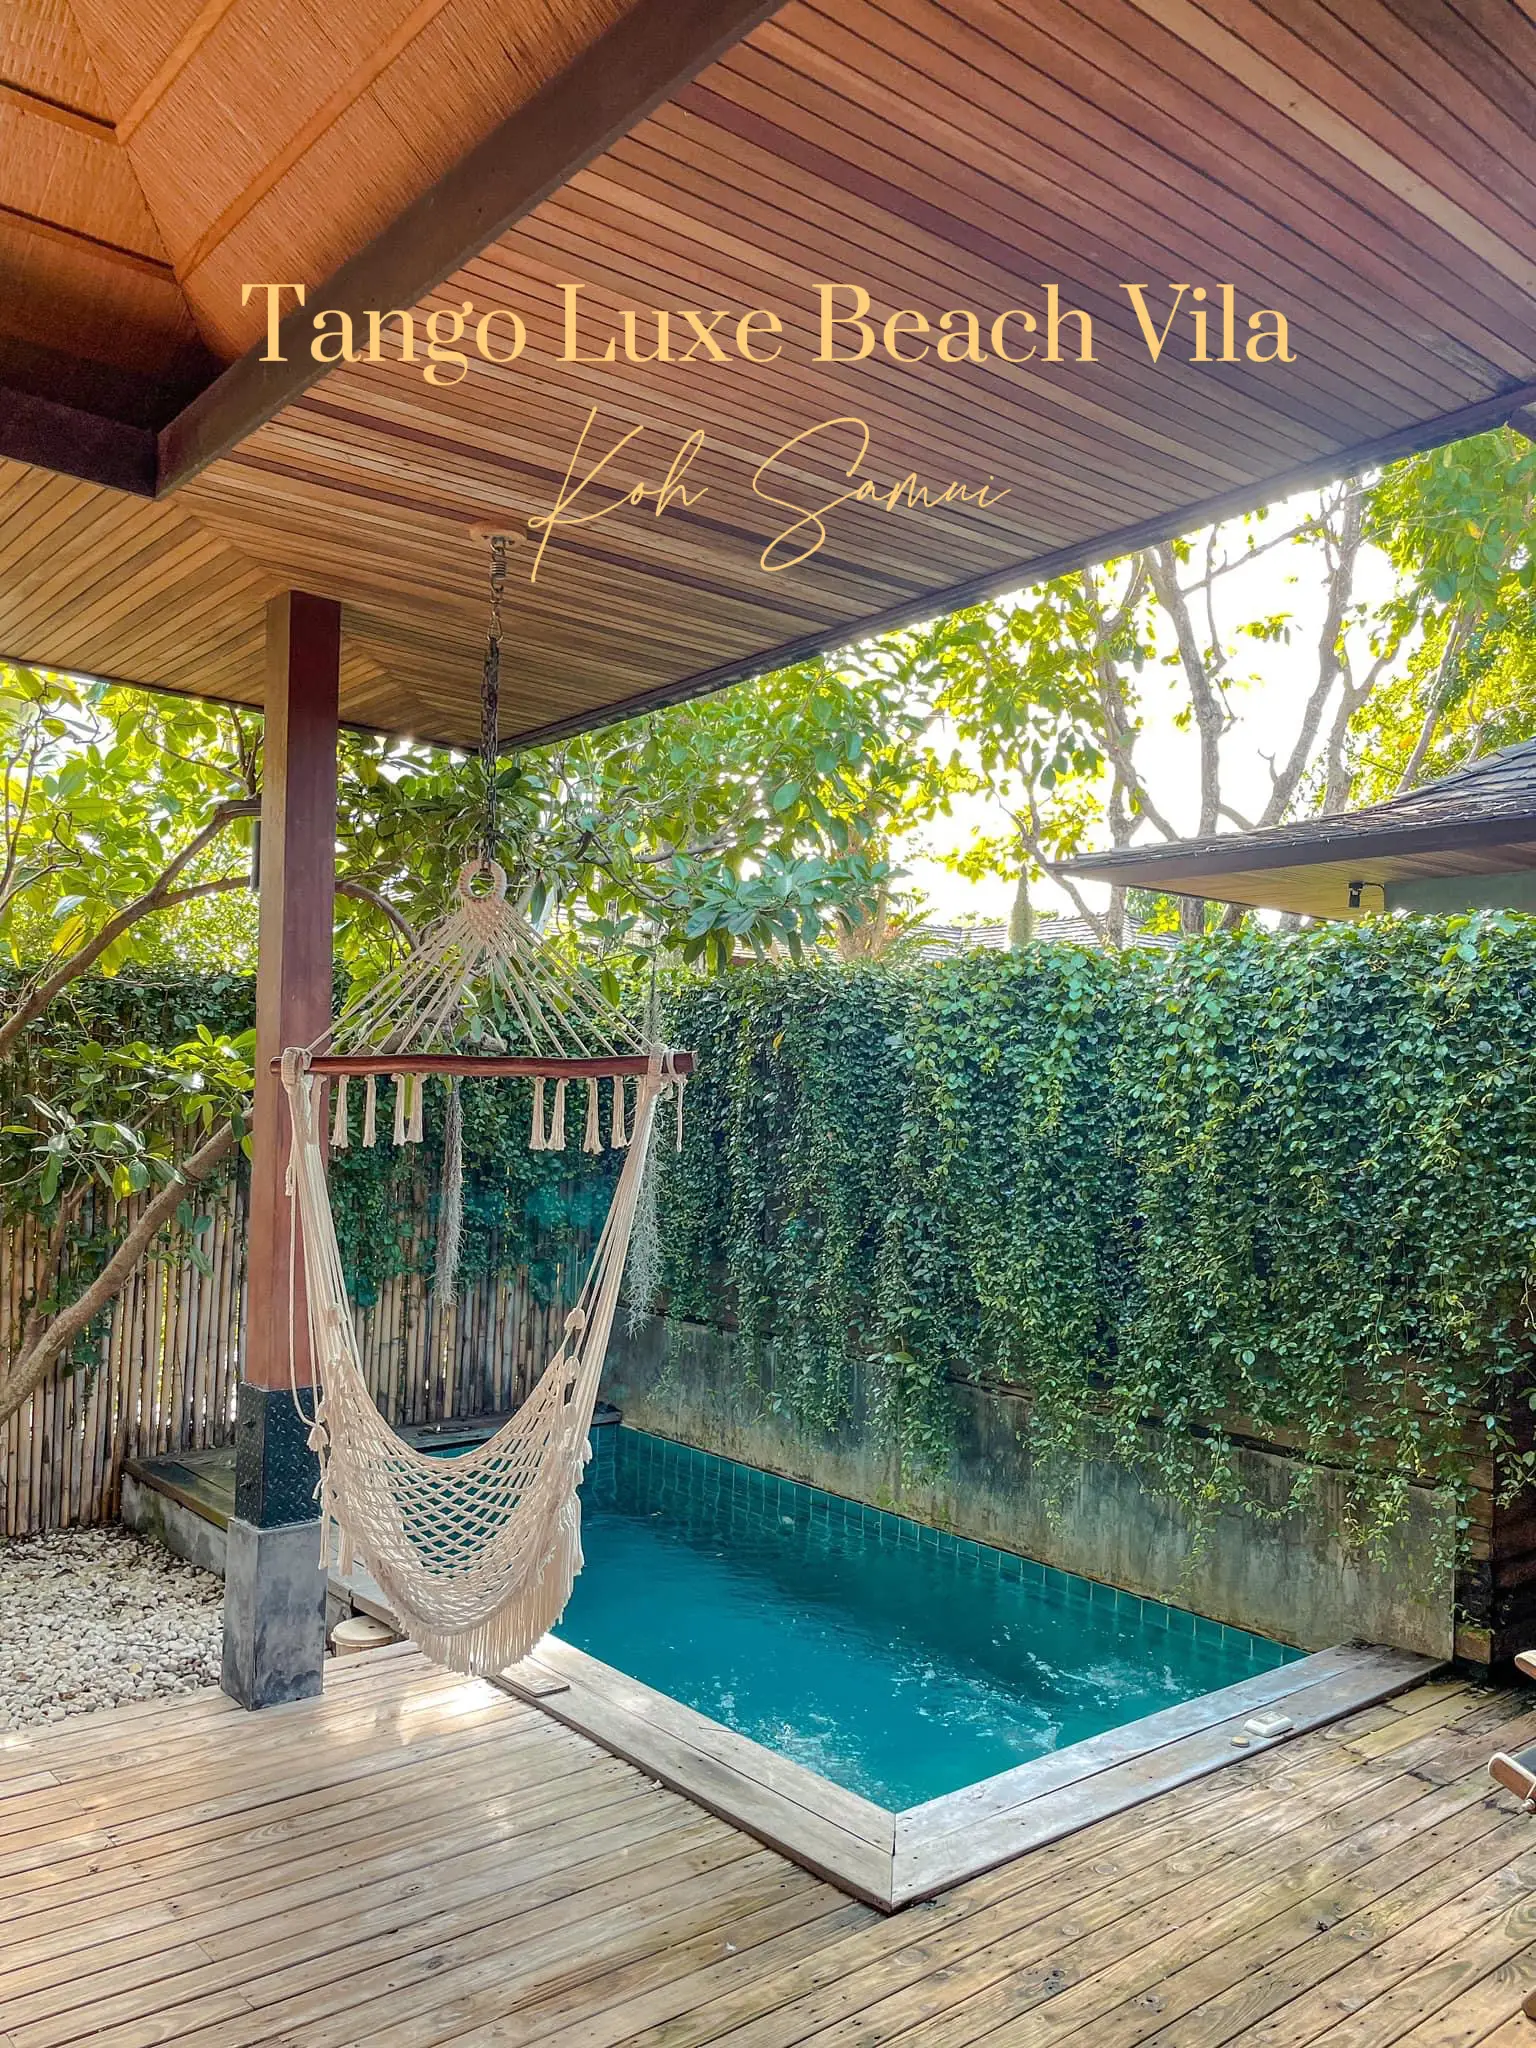 Tango Luxe Beach Villa - อีกสิ่งหนึ่งที่ห้ามพลาดเมื่อมา Tango Luxe